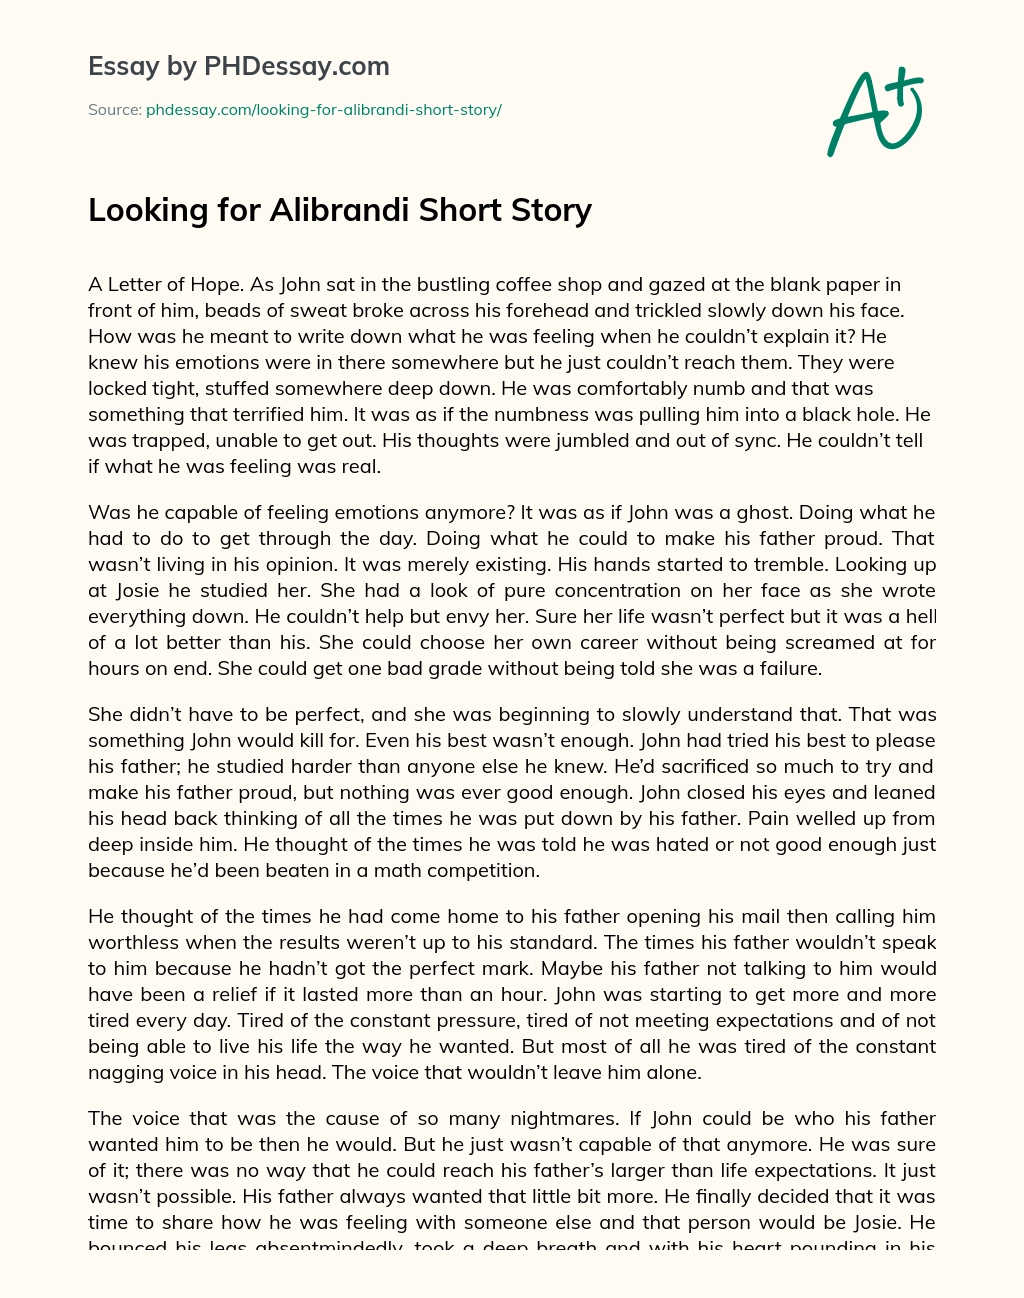 Looking for Alibrandi Short Story essay